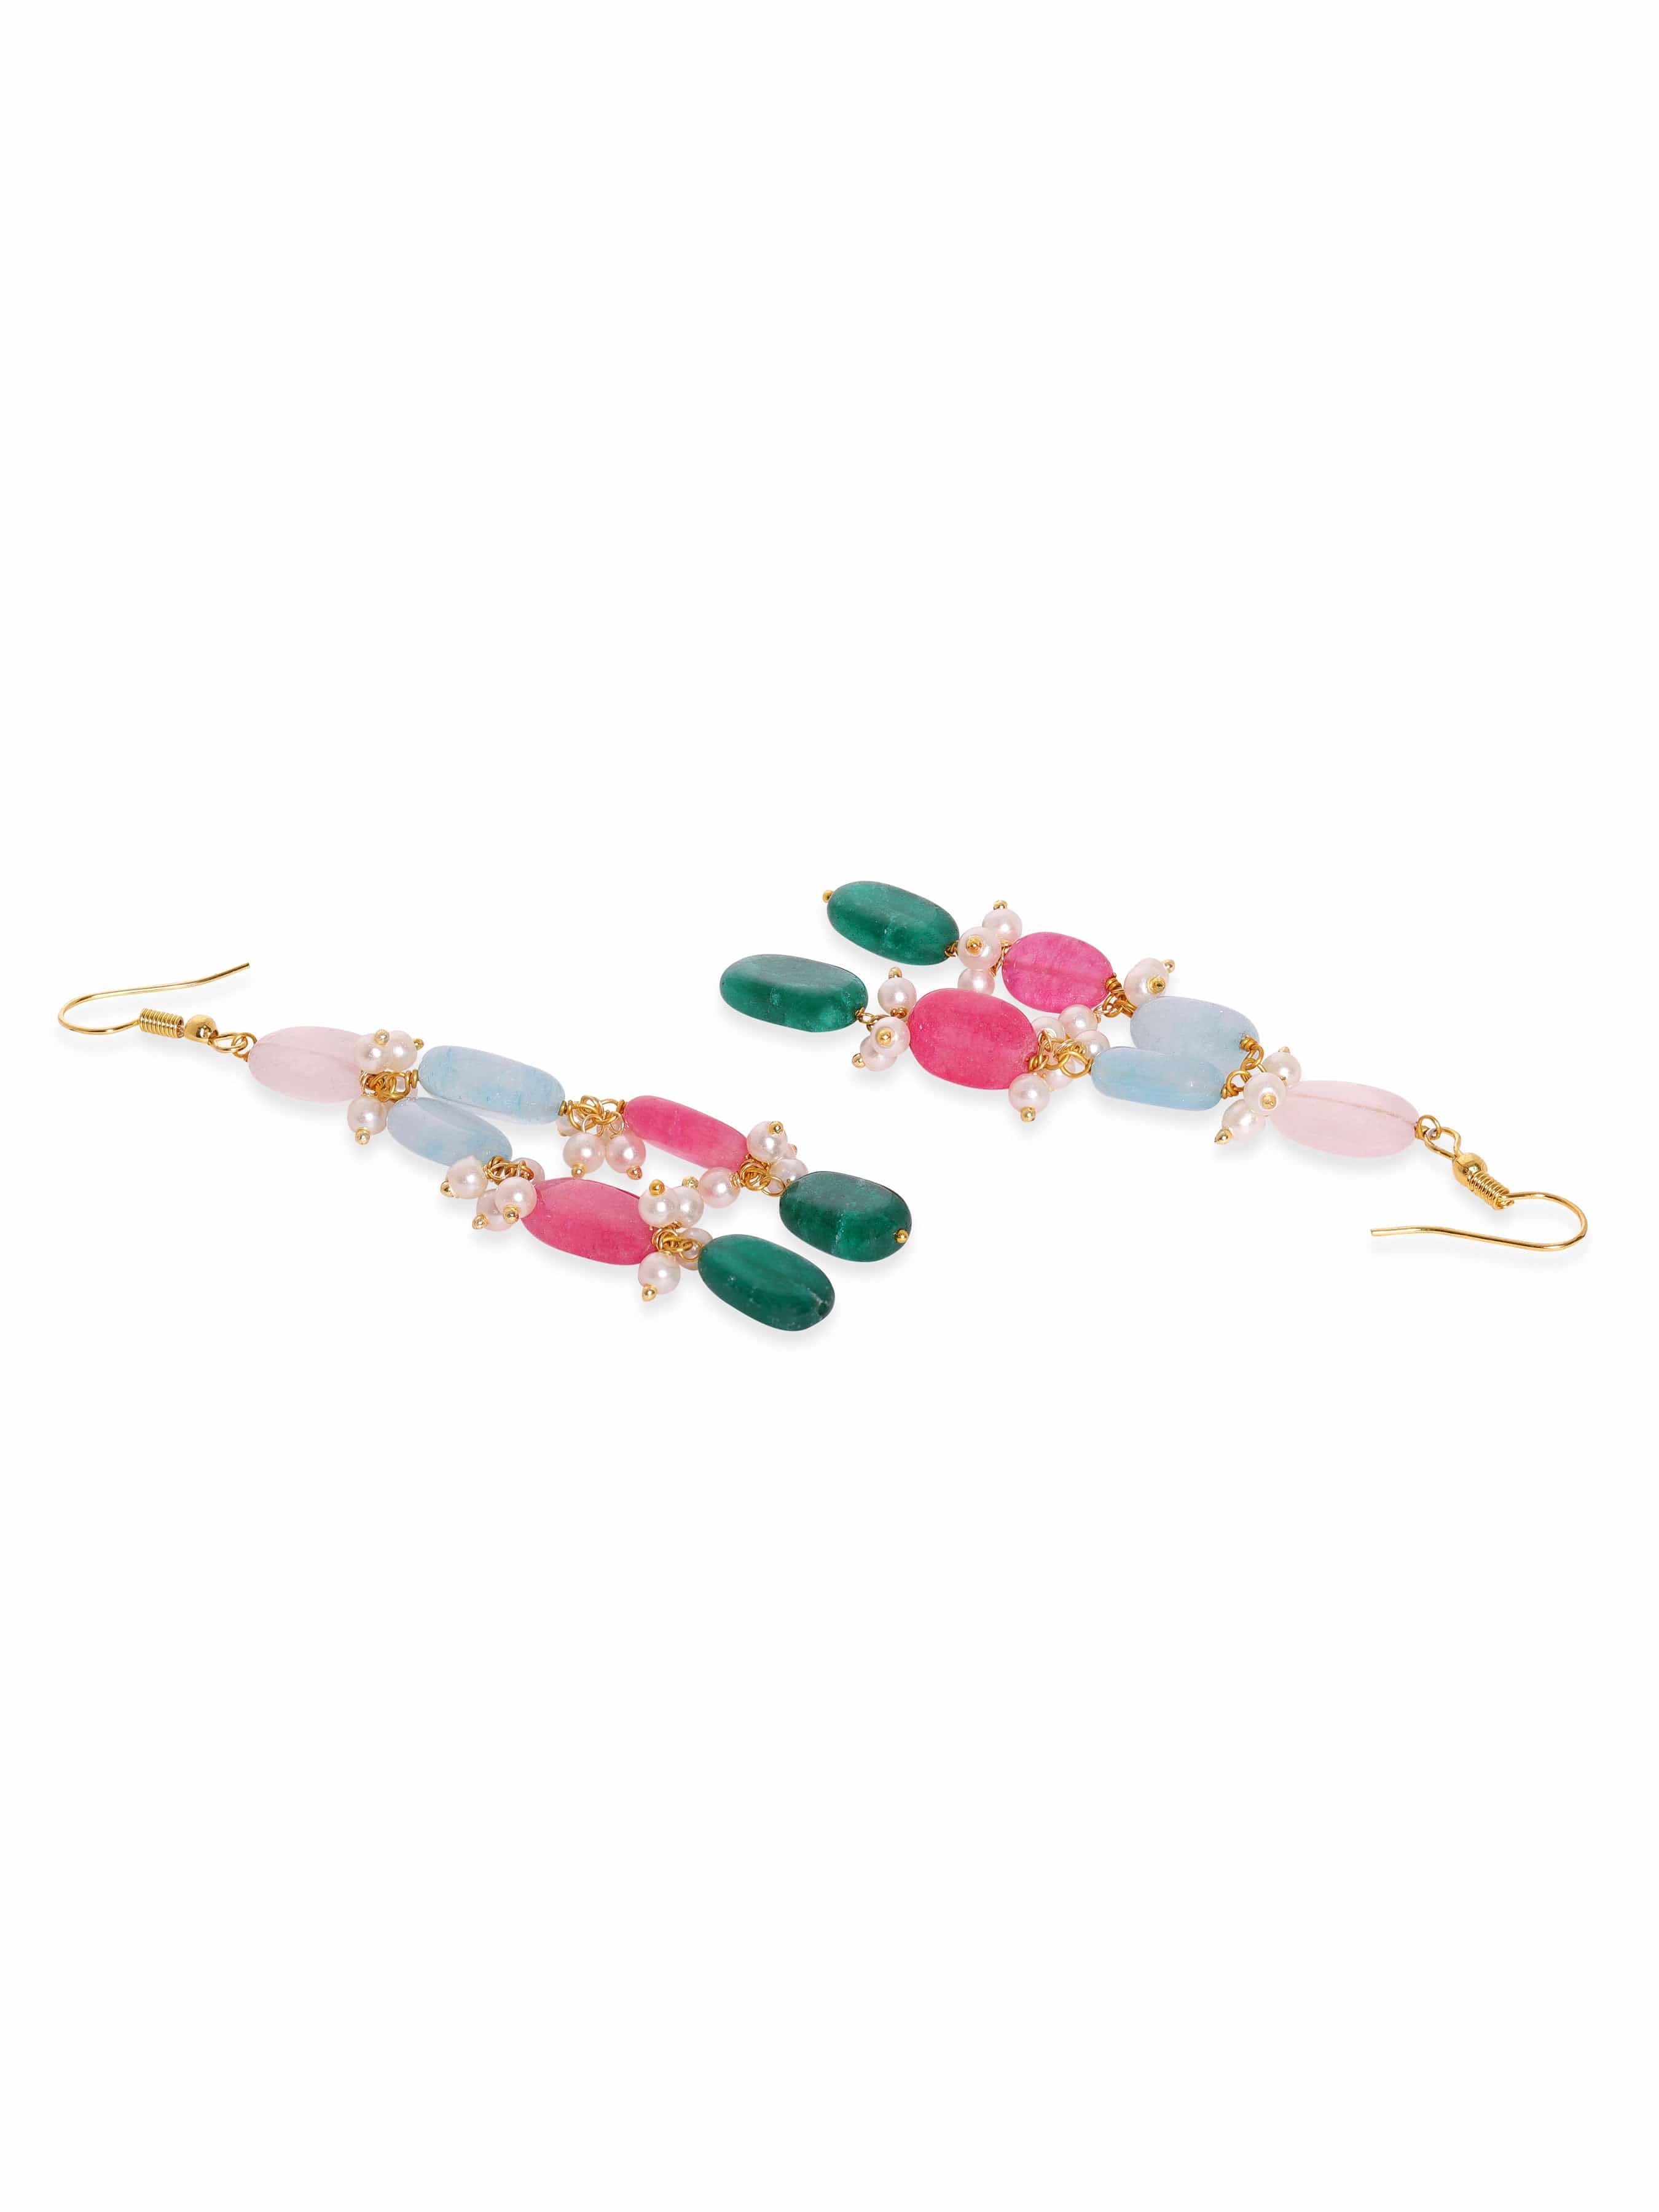 Natasha Accessories Multicolor Stone Statement Necklace | Dillard's